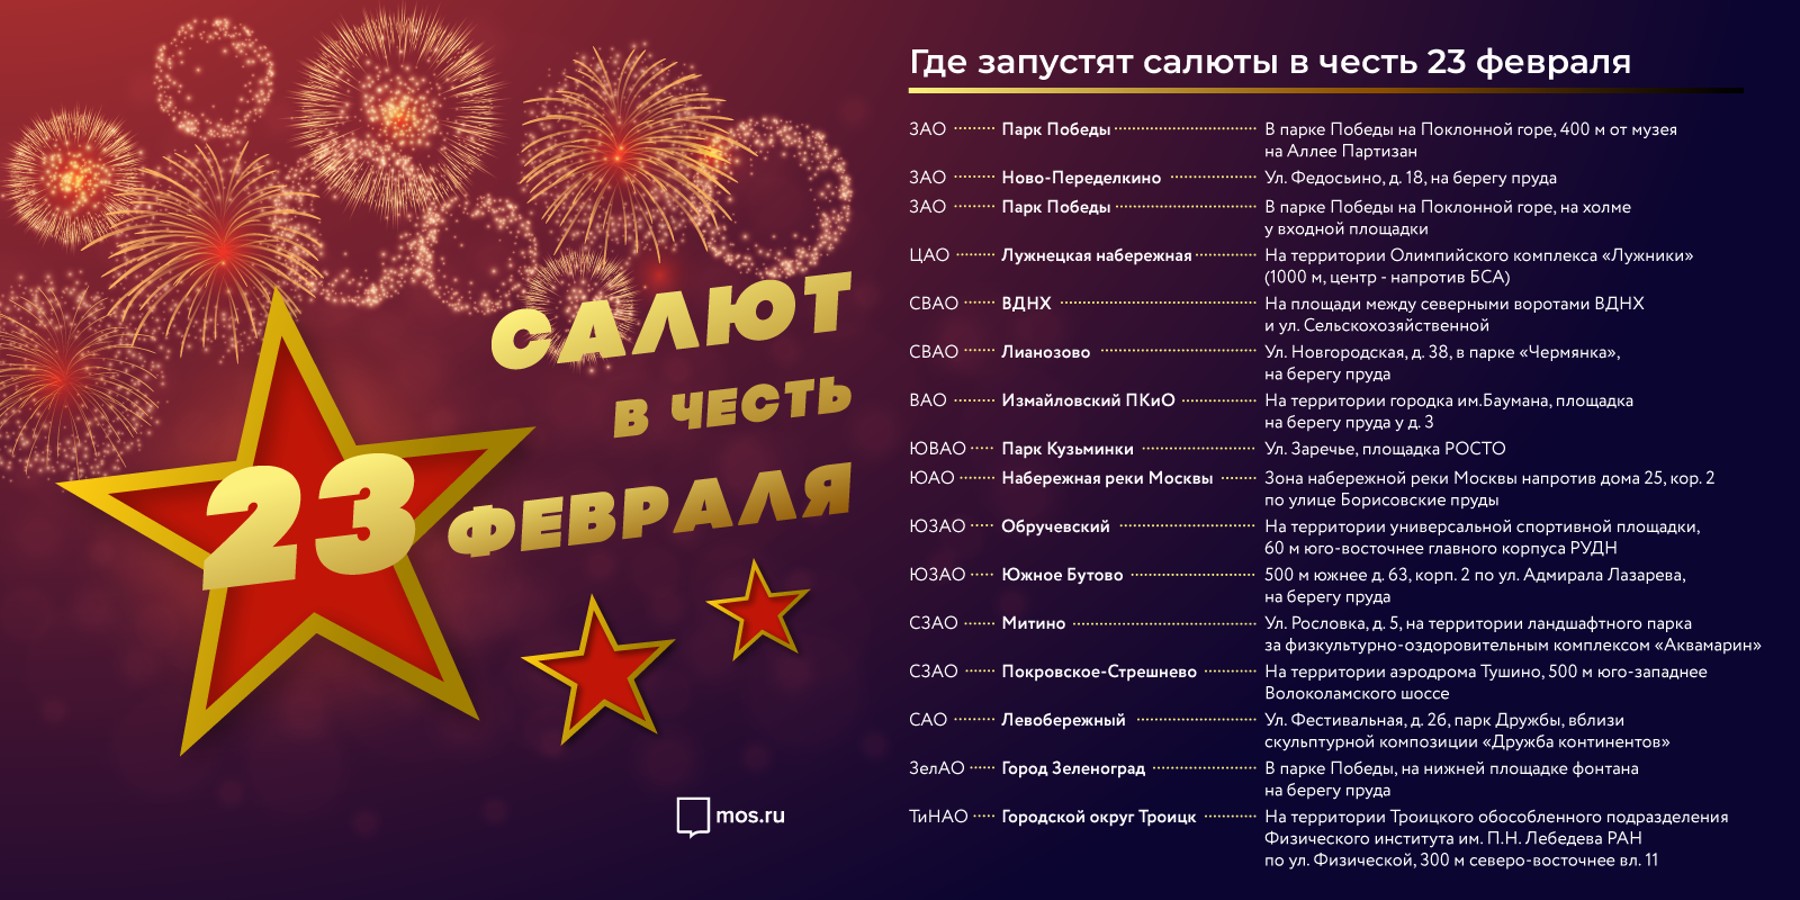 Более 200 праздничных мероприятий: как пройдет день города в санкт-петербурге